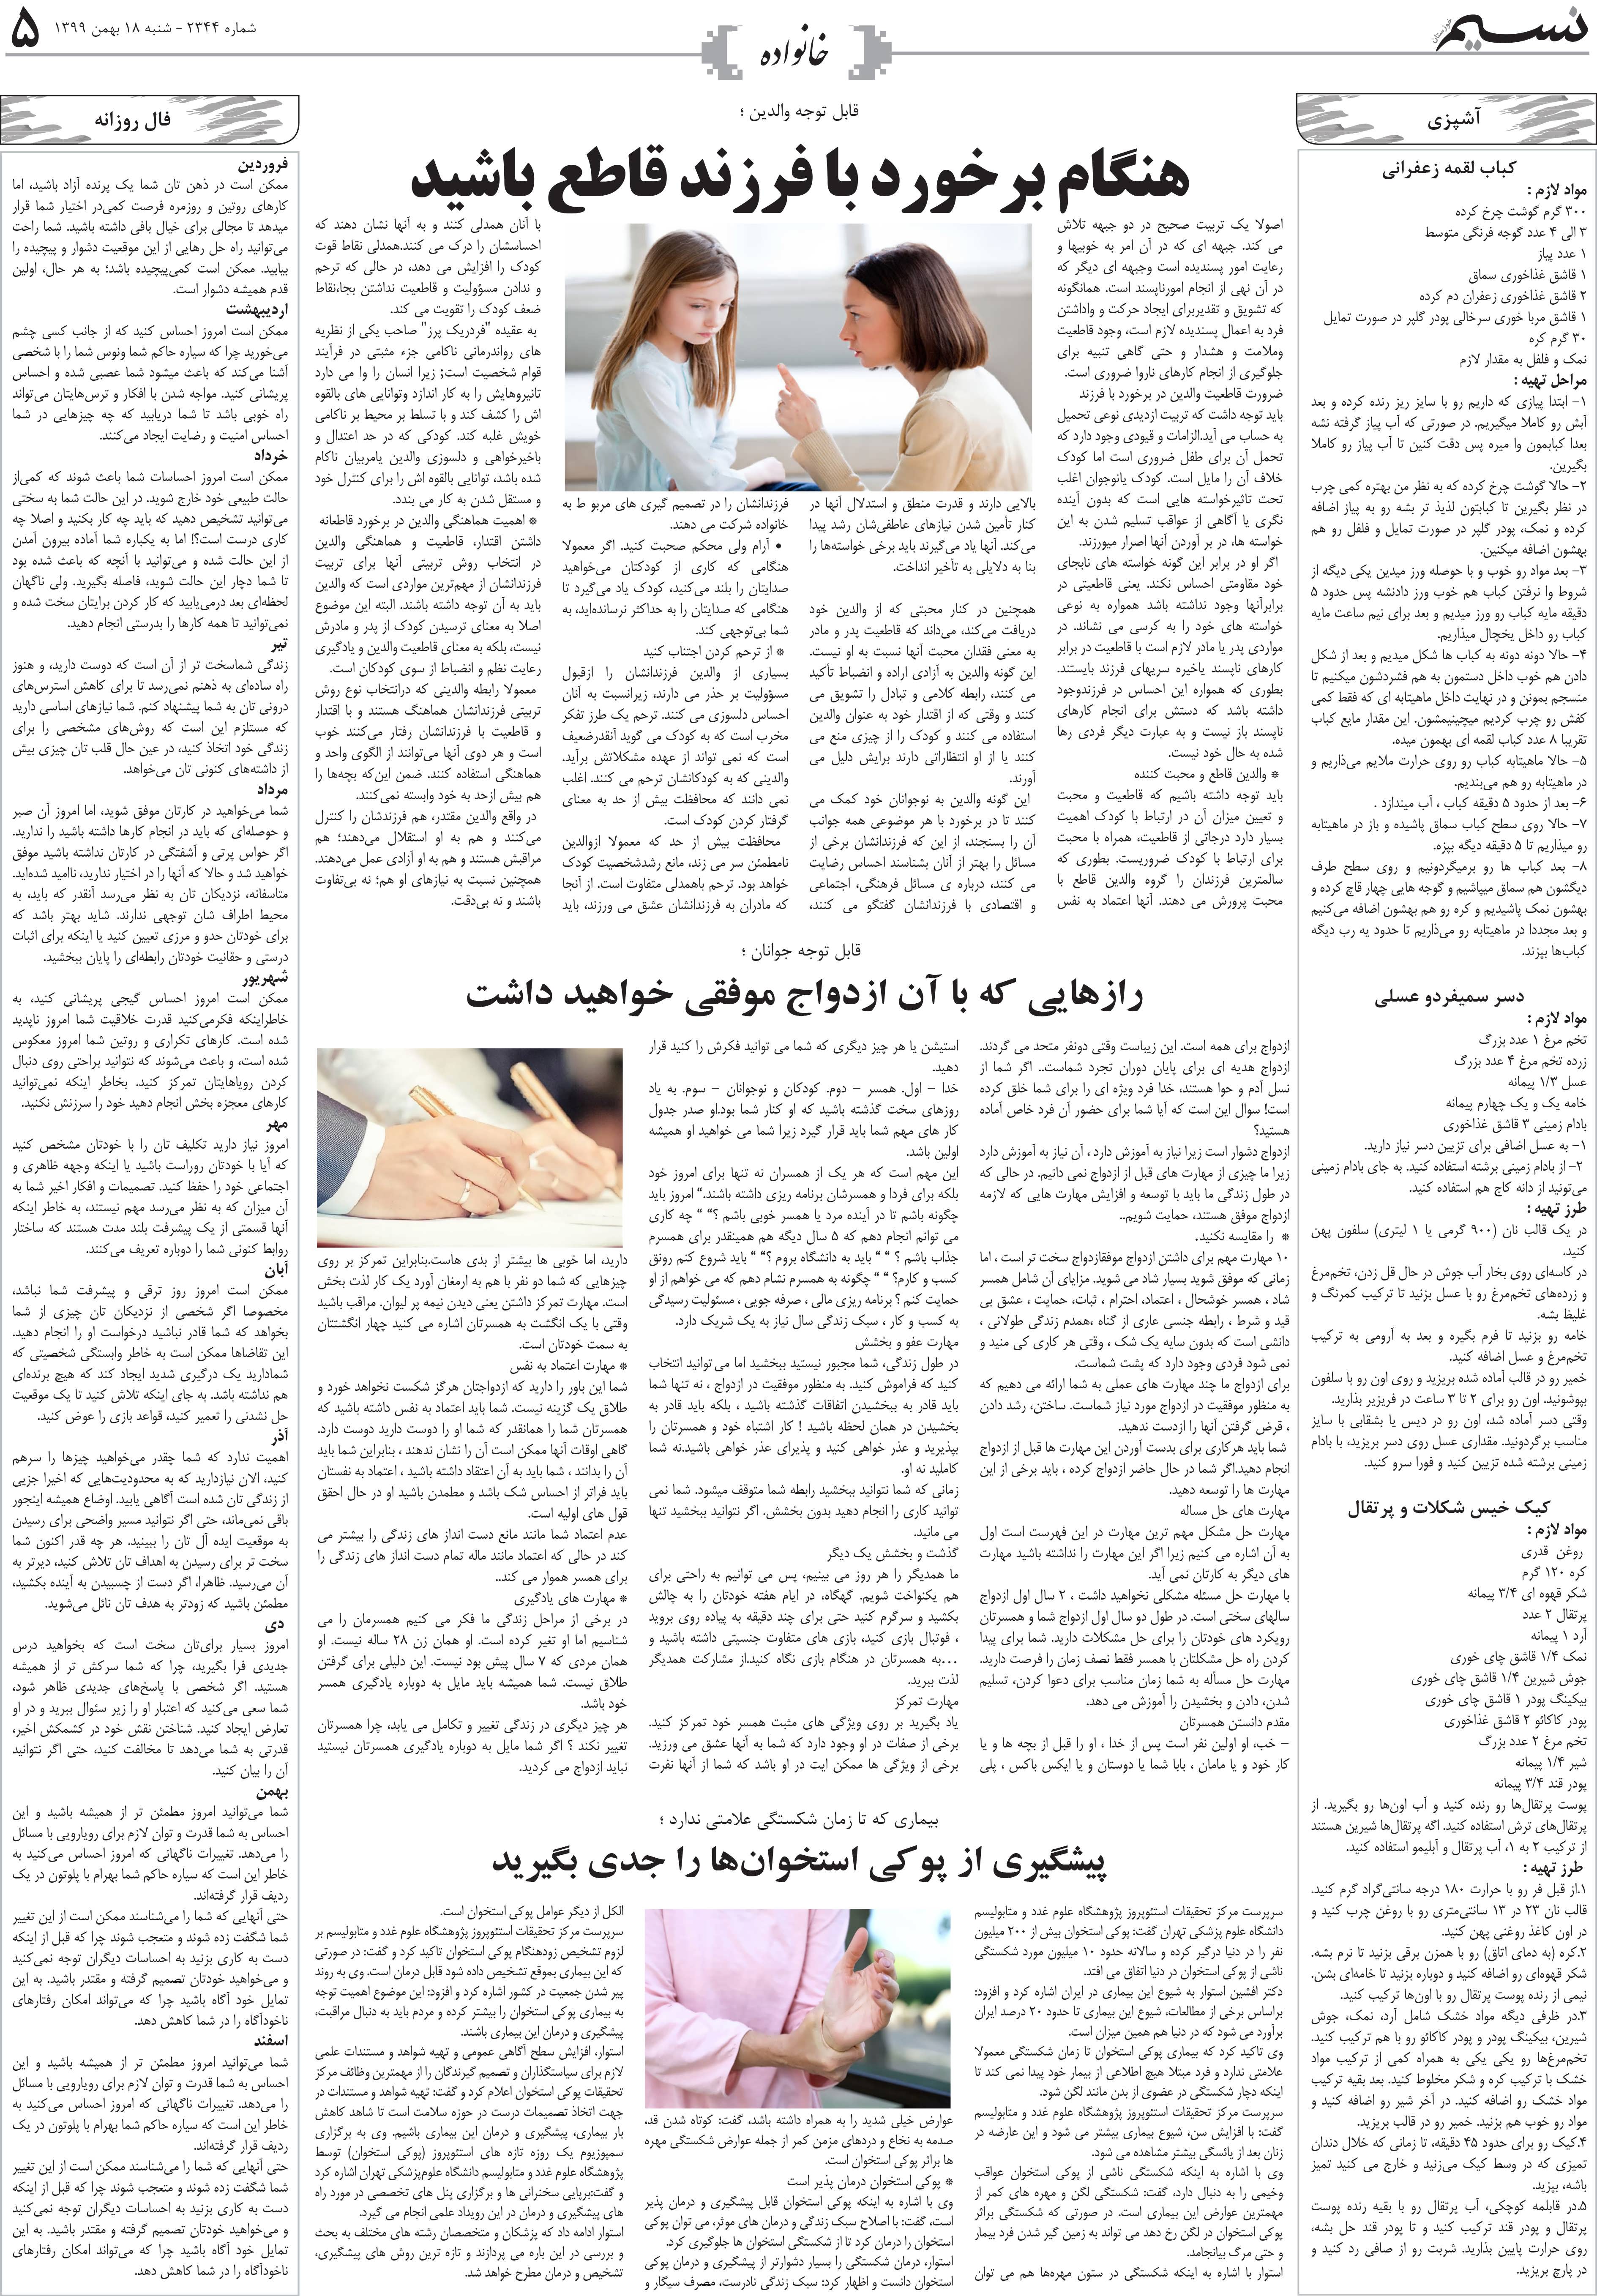 صفحه خانواده روزنامه نسیم شماره 2344